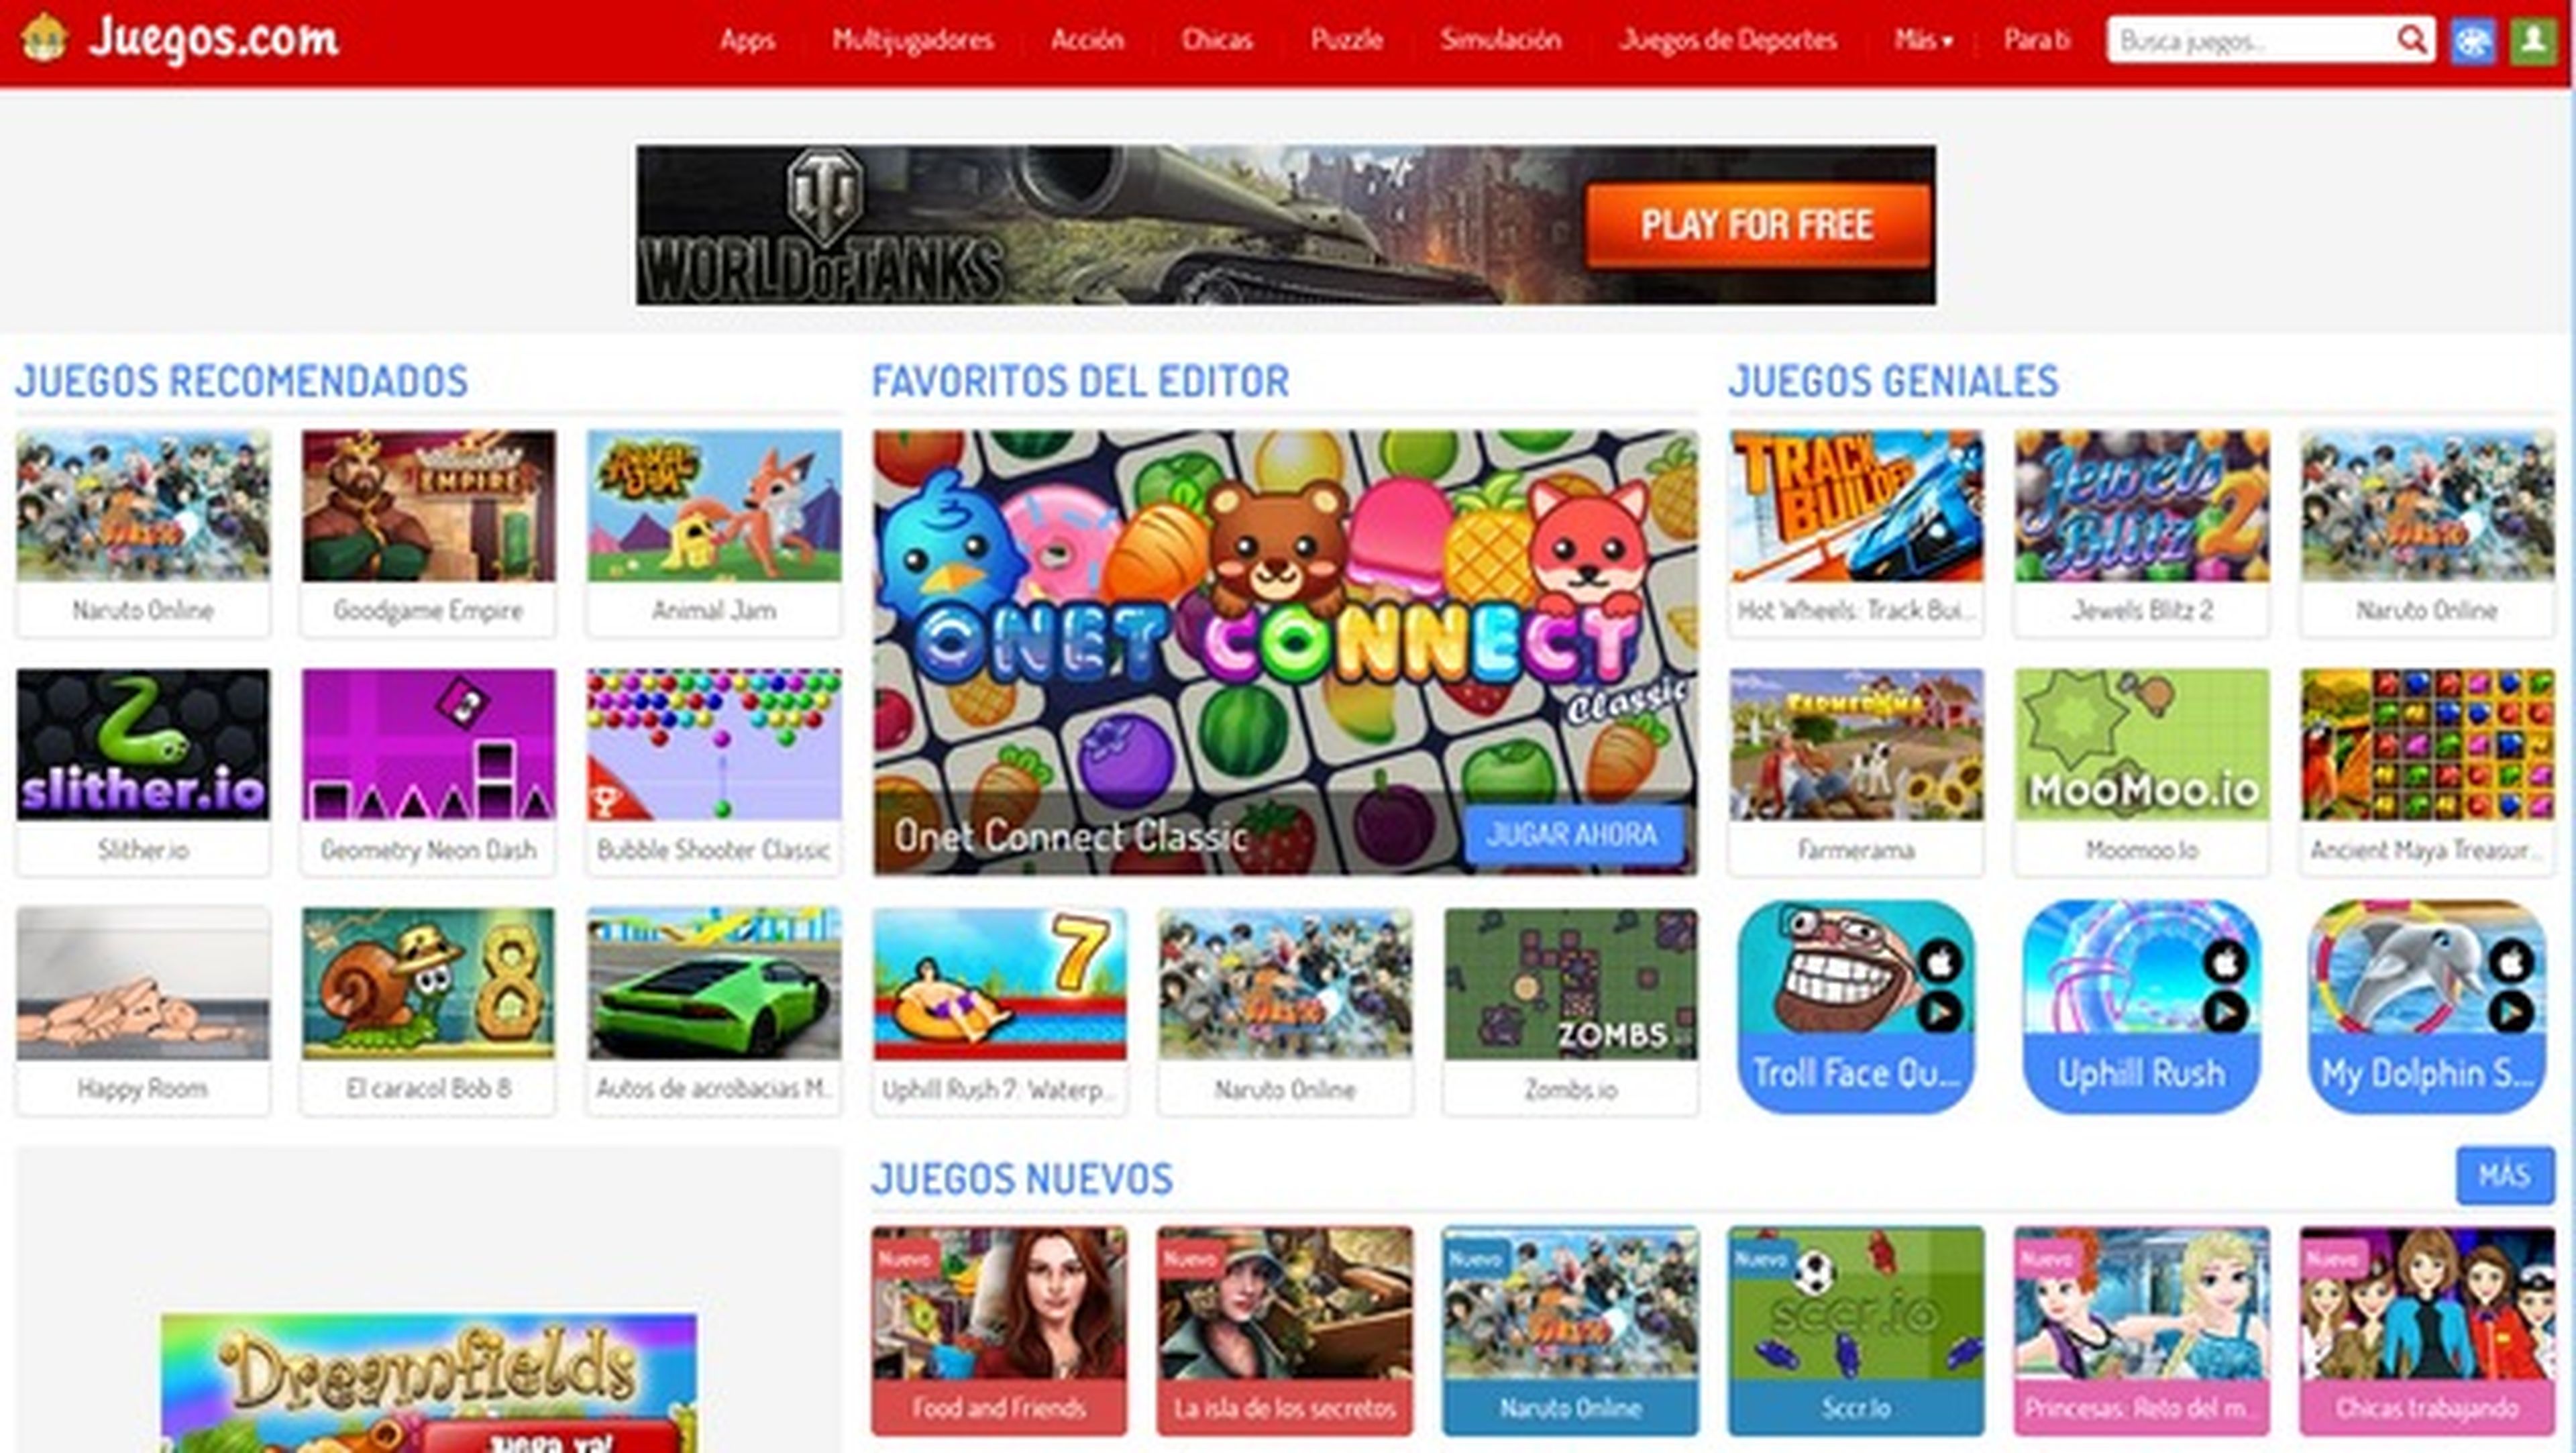 UNO ONLINE juego gratis online en Minijuegos